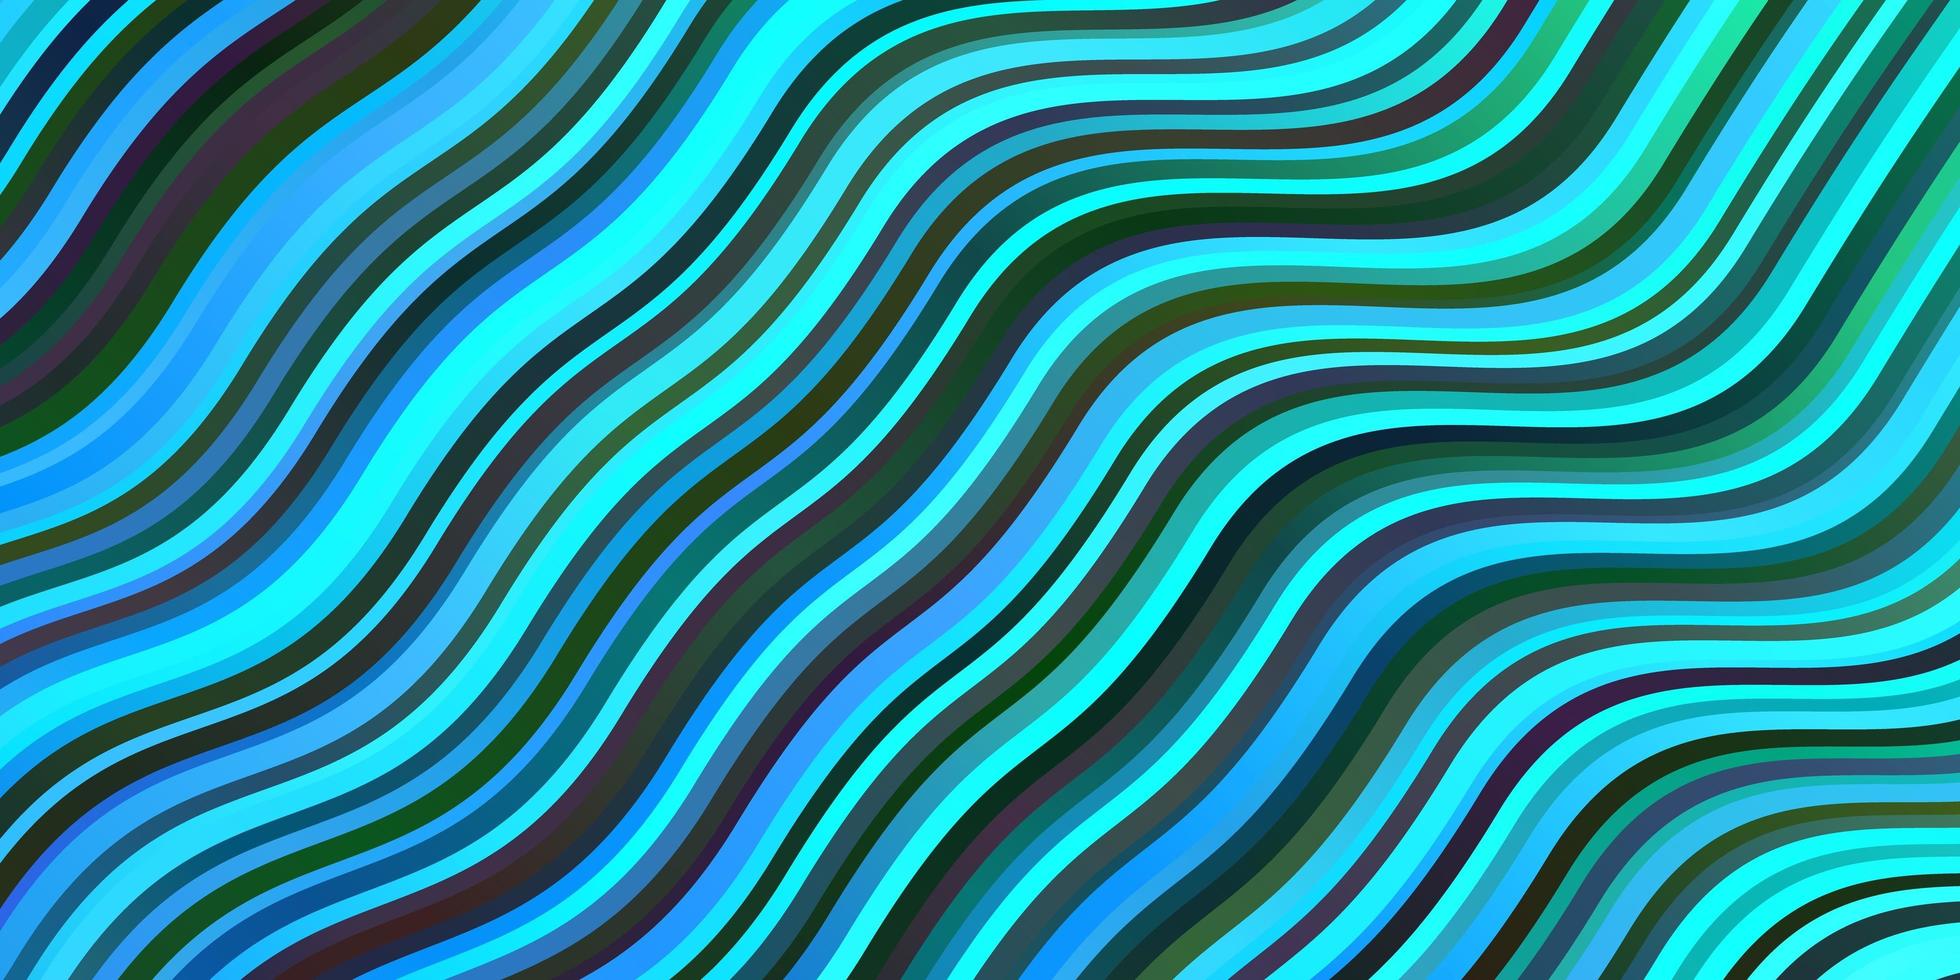 sfondo vettoriale blu scuro con linee piegate